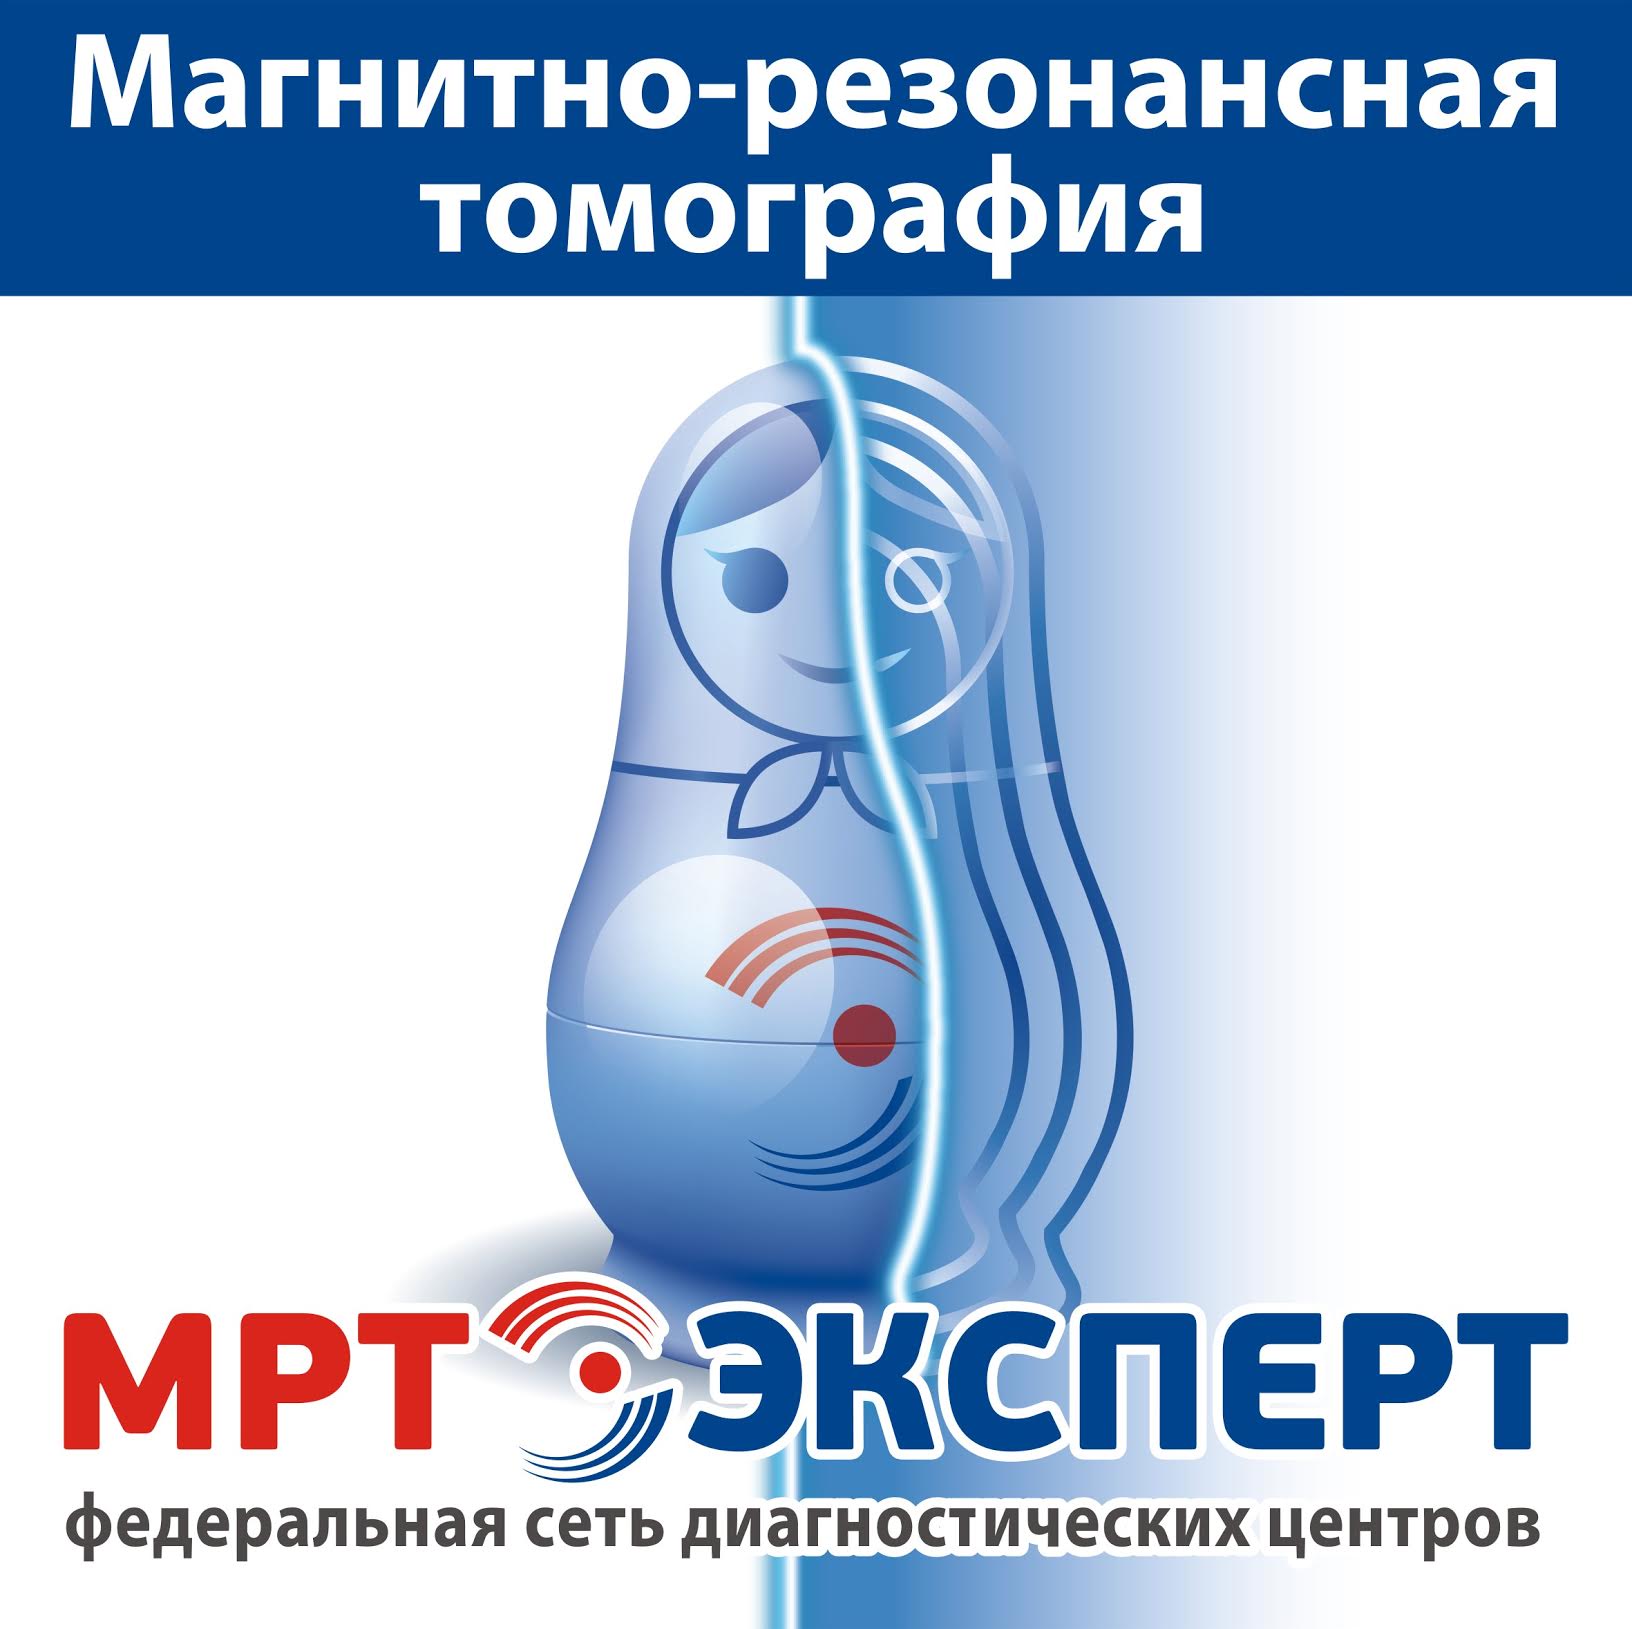 Федеральная сеть диагностических центров «МРТ-Эксперт» в г. Санкт-Петербург